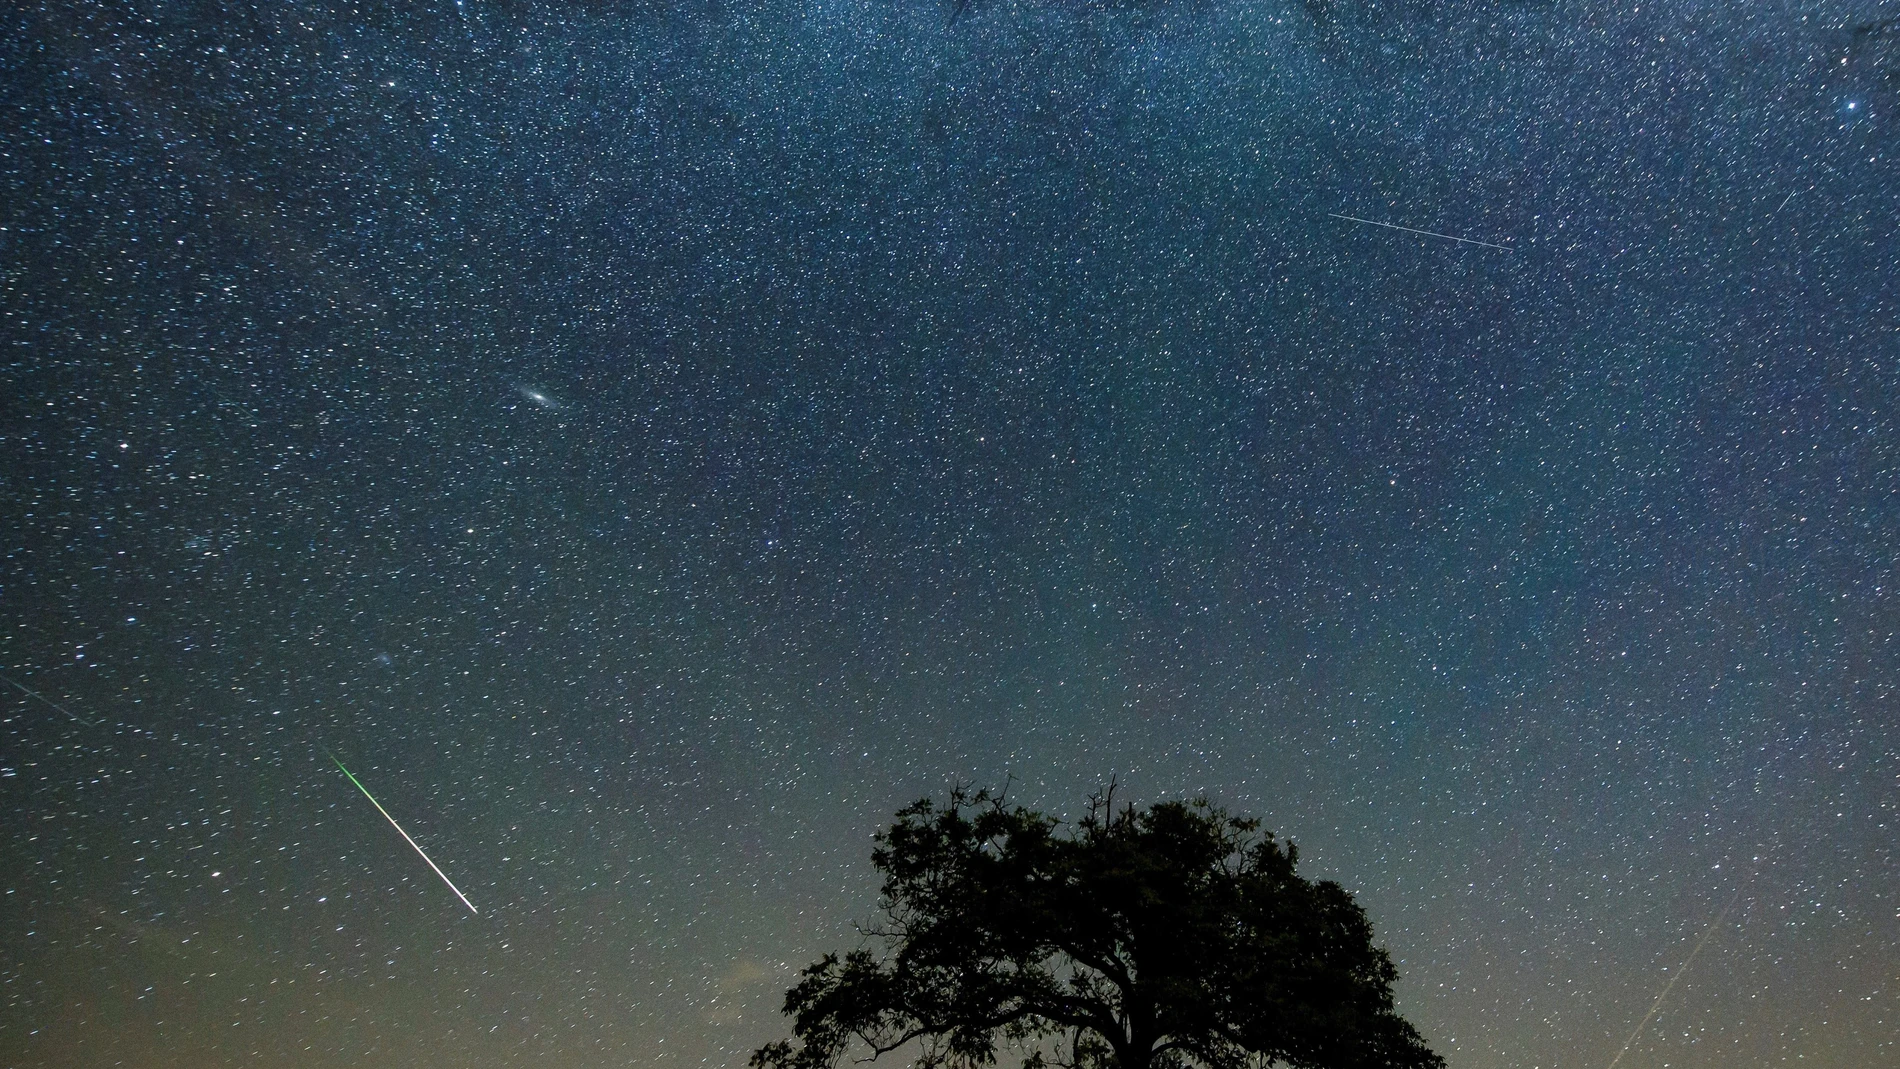 Varios meteoritos cruzan el cielo durante la lluvia de perseidas